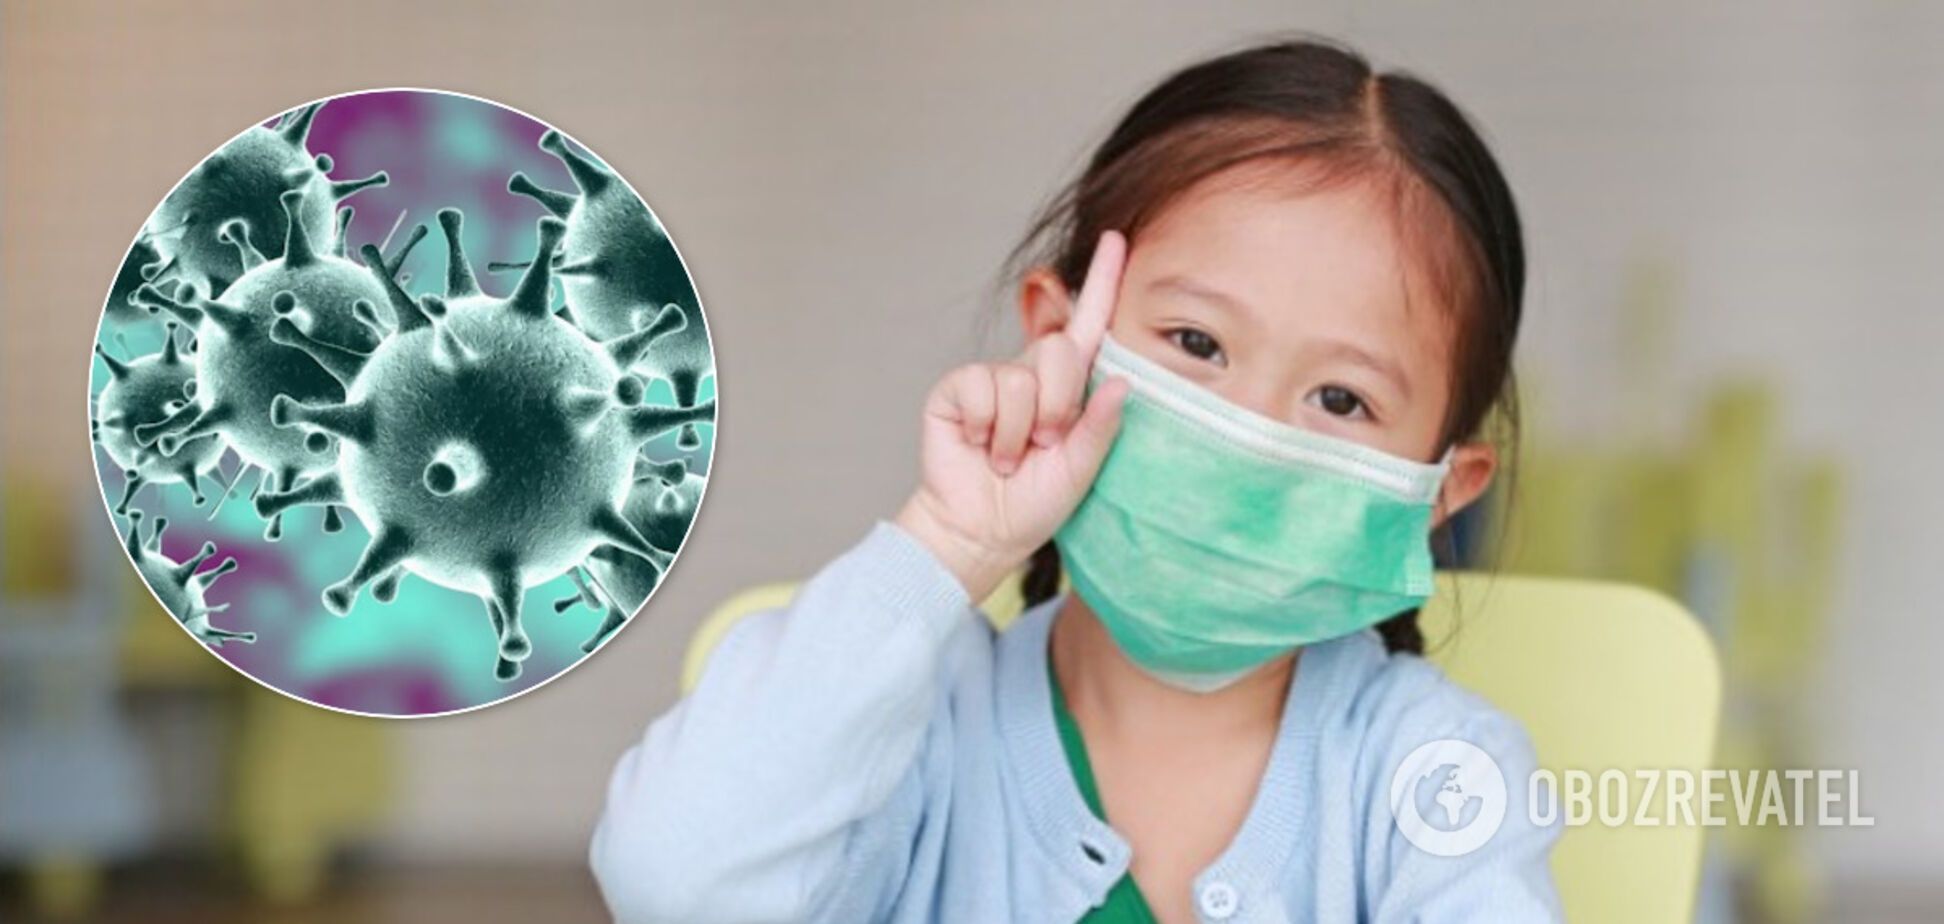 Дети тоже умирают от коронавируса: ВОЗ предупредила об опасности